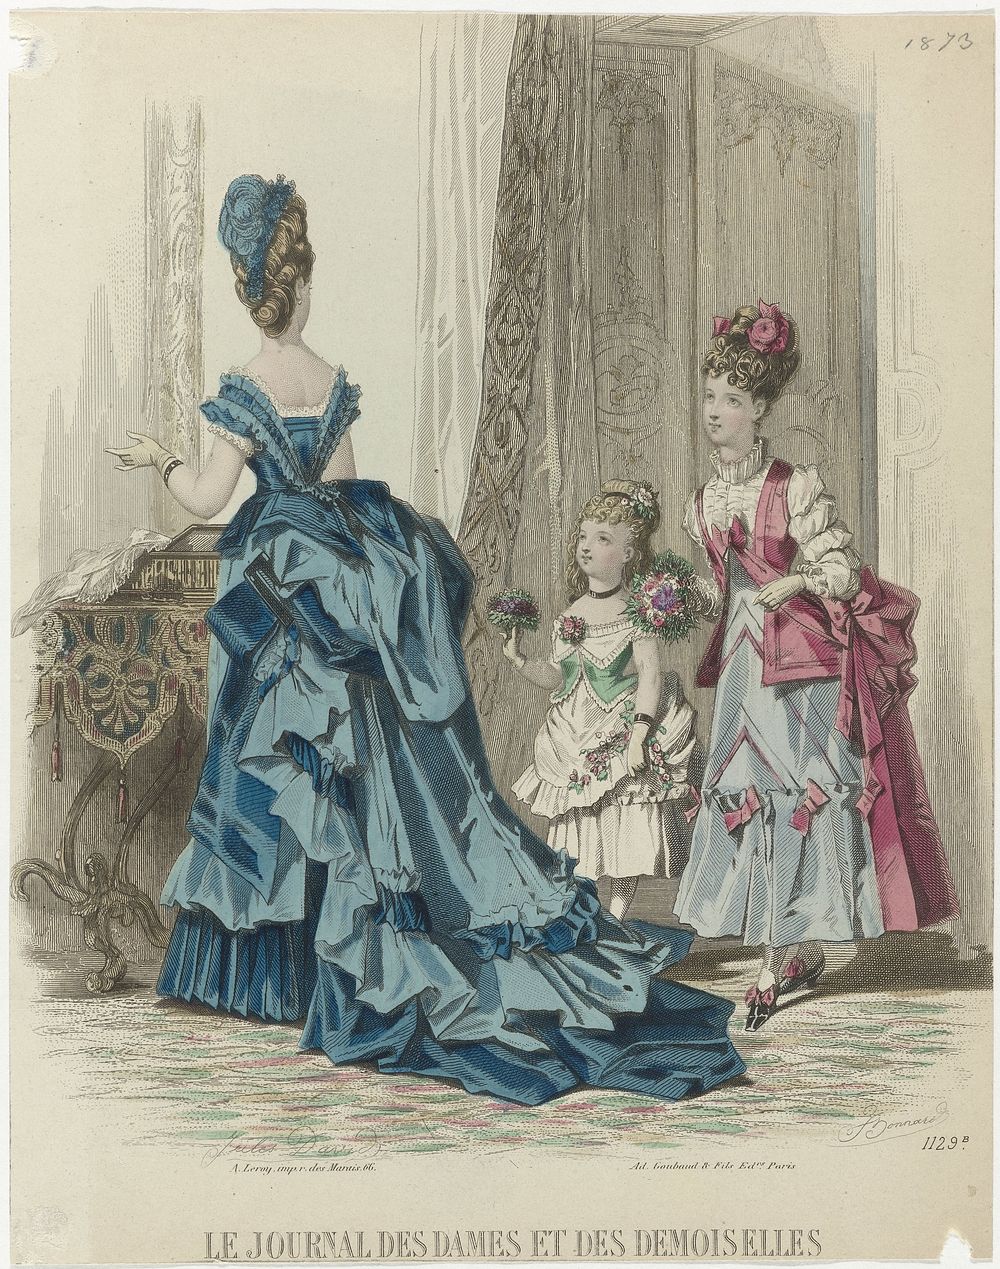 Le Journal des Dames et des Demoiselles, 1873, No. 1129b (1873) by J Bonnard, Jules David 1808 1892, Ad Goubaud et Fils and…